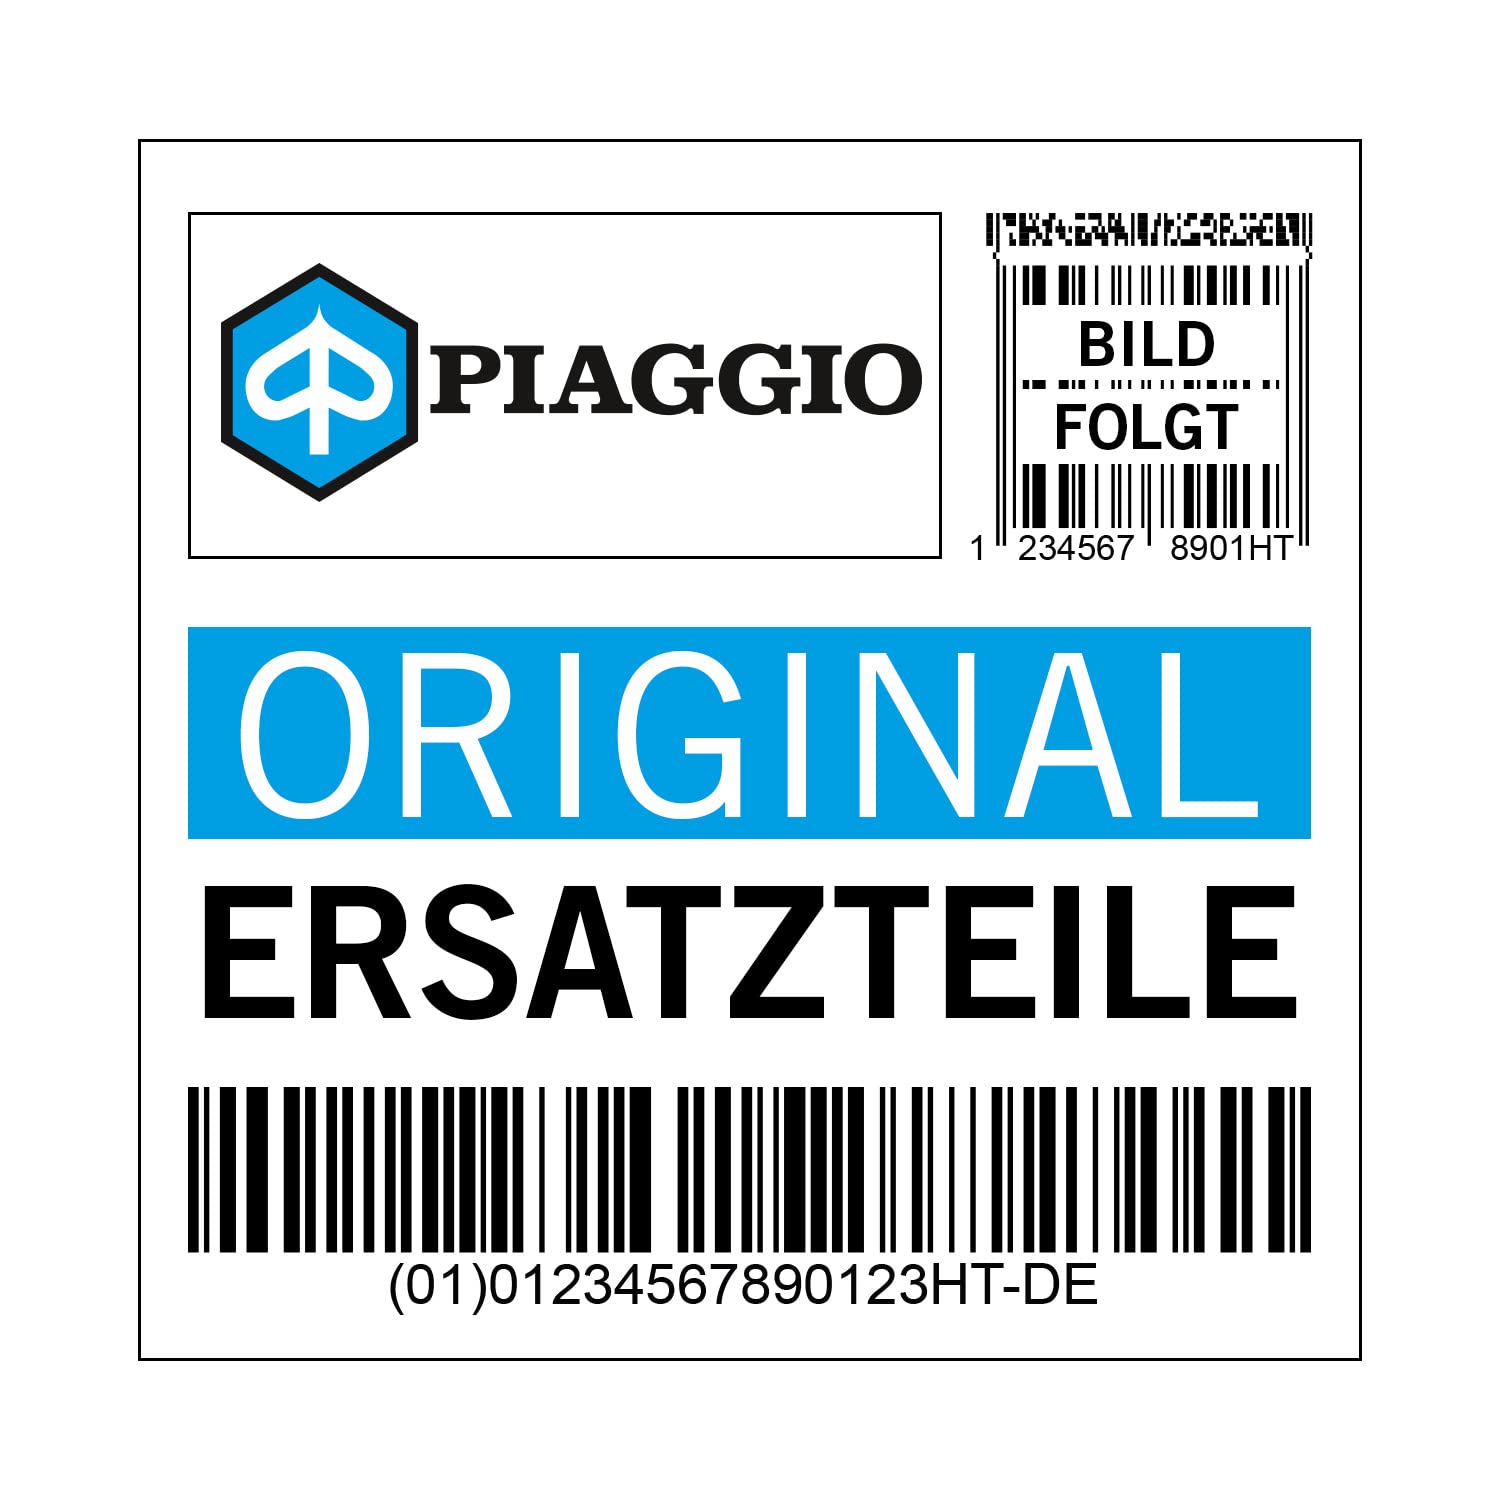 Deckel Piaggio Kappe Bremsflüssigkeit, 498431 von Maxtuned